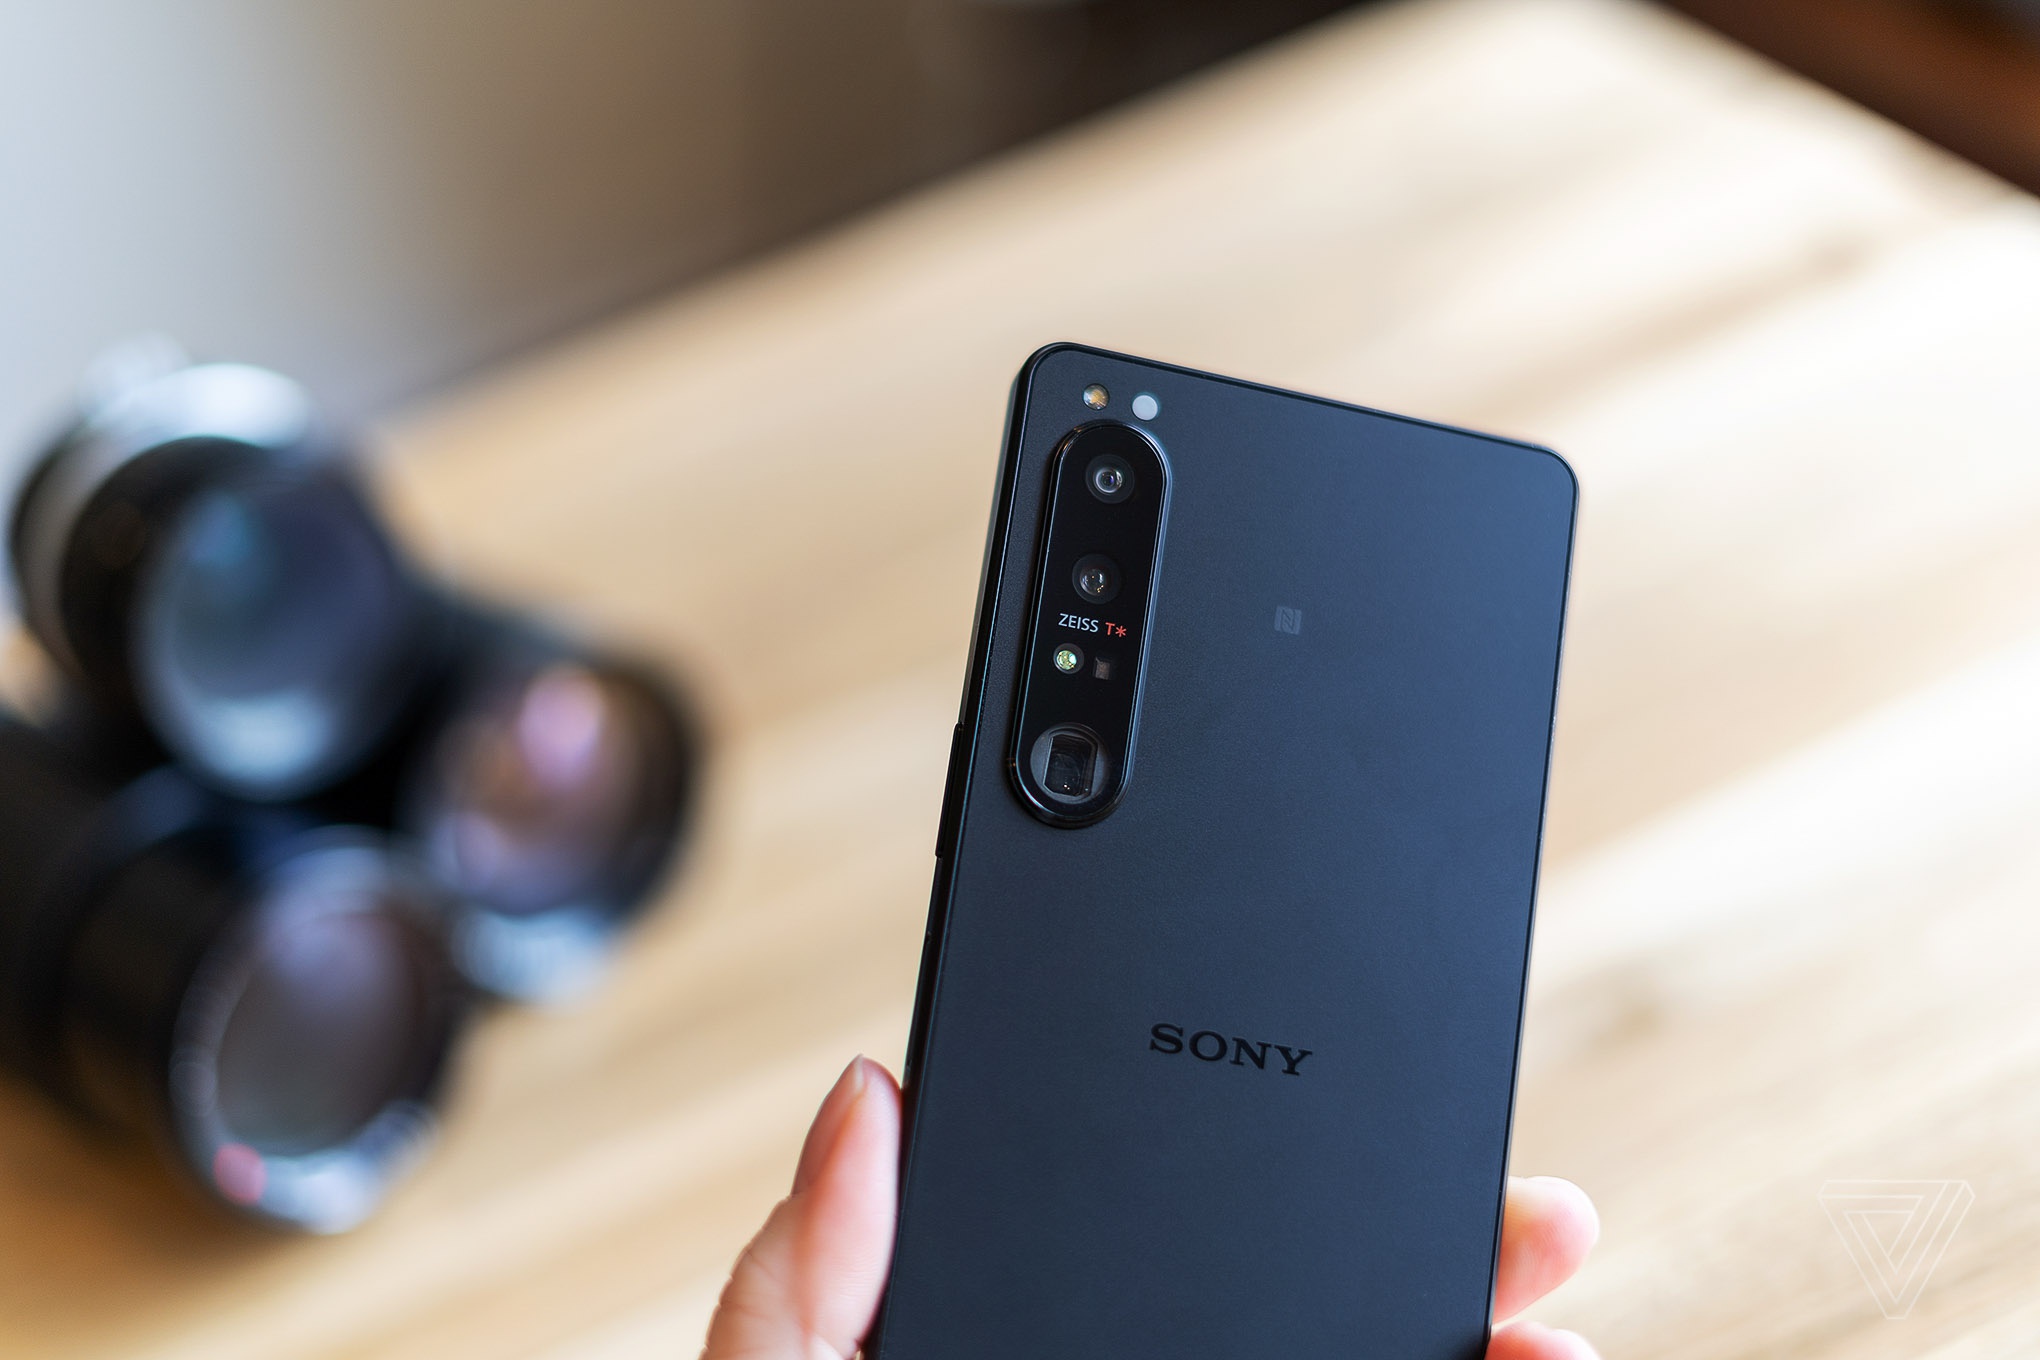 Smartphone mới của Sony có giá 1.600 USD, hệ thống camera đặc biệt - ảnh 4